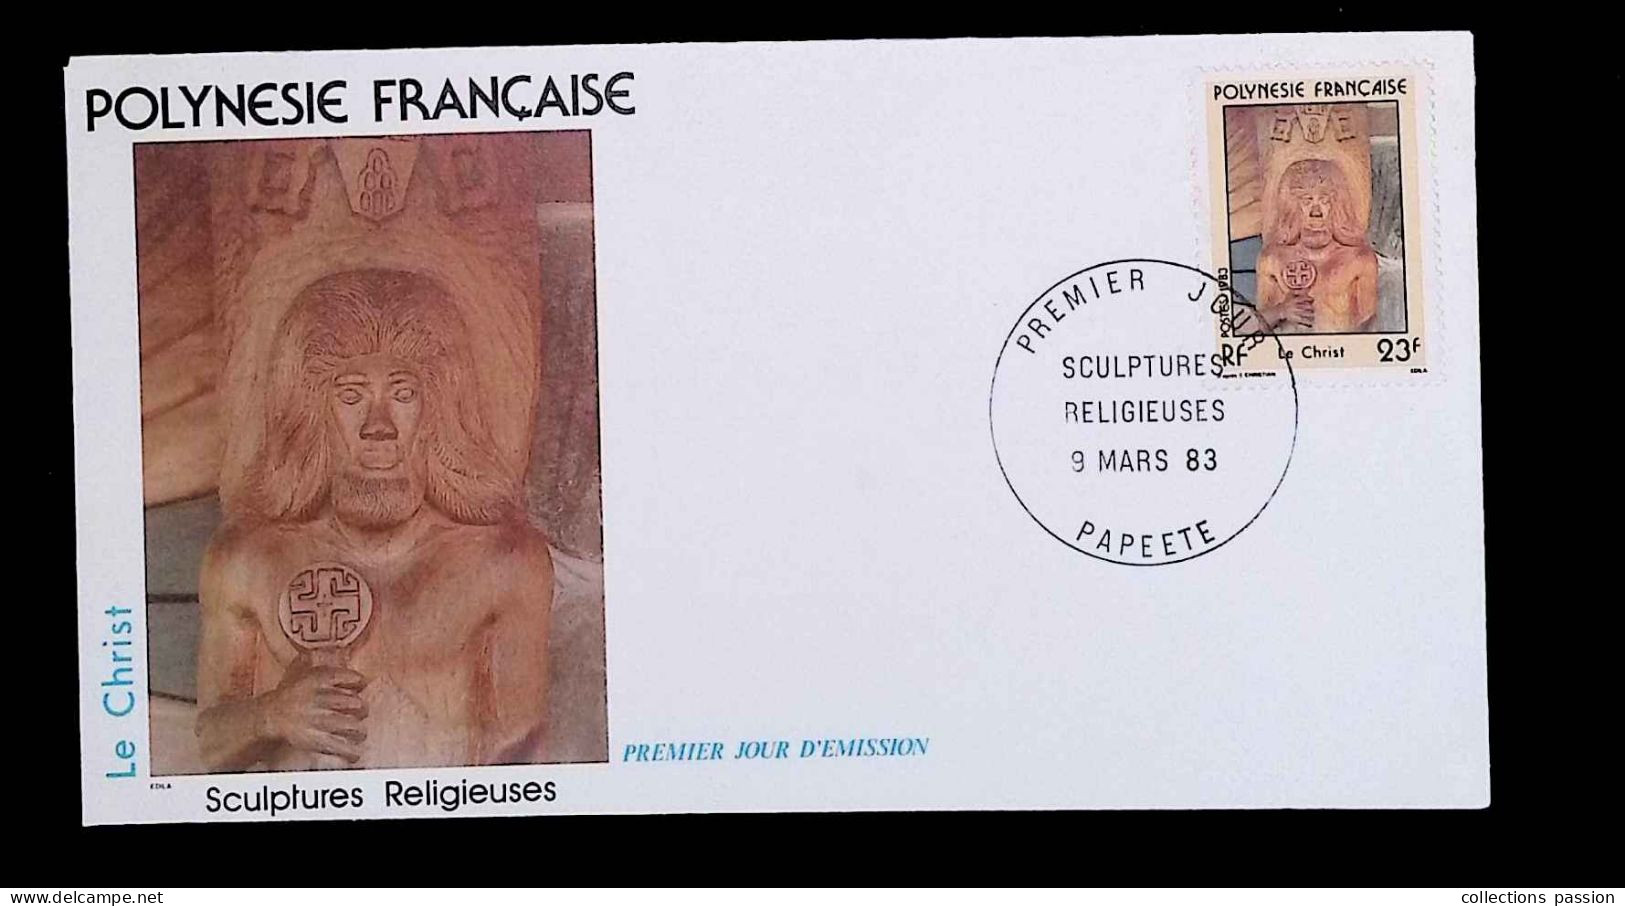 CL, FDC, 1 Er Jour,  Polynésie Française, Papeete, 9 Mars 83, Sculptures Religieuses, Le Christ - FDC